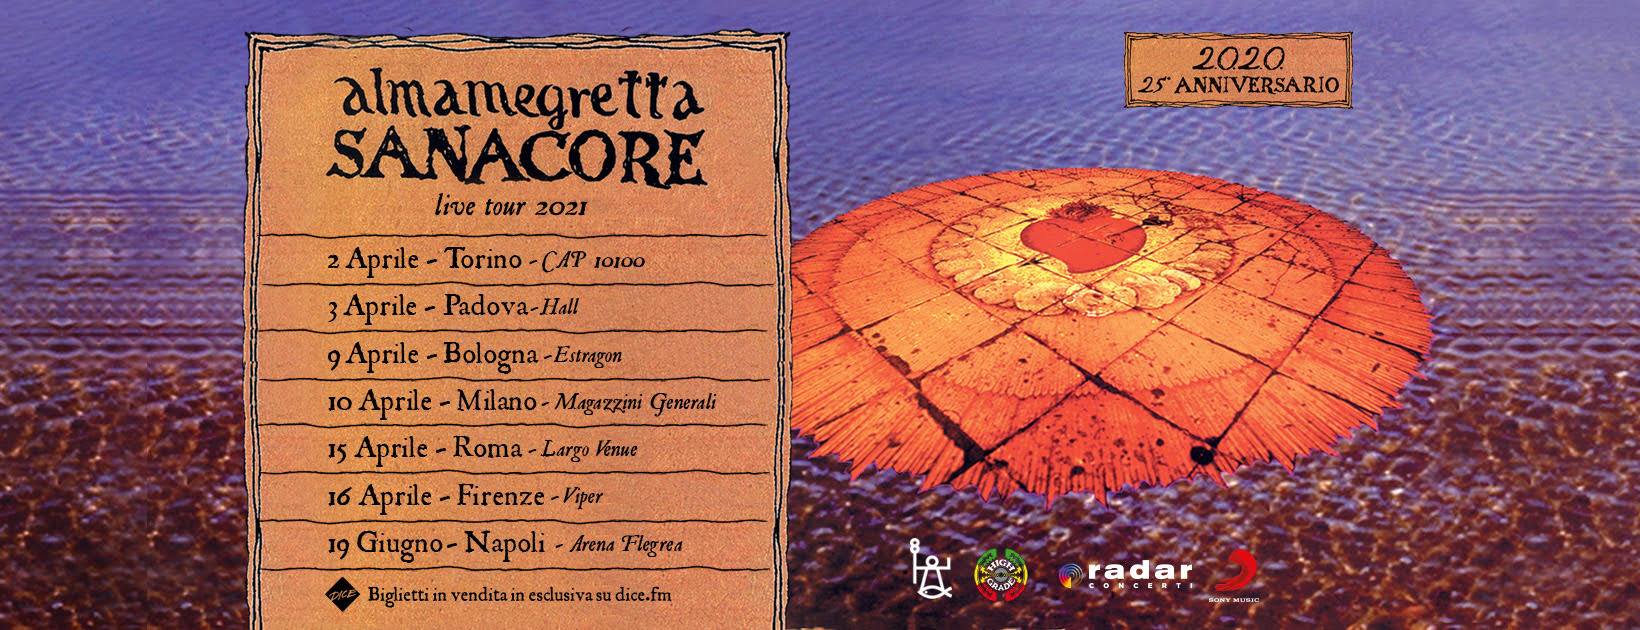 Almamegretta, Sanacore live tour 2021, Estragon Club Bologna